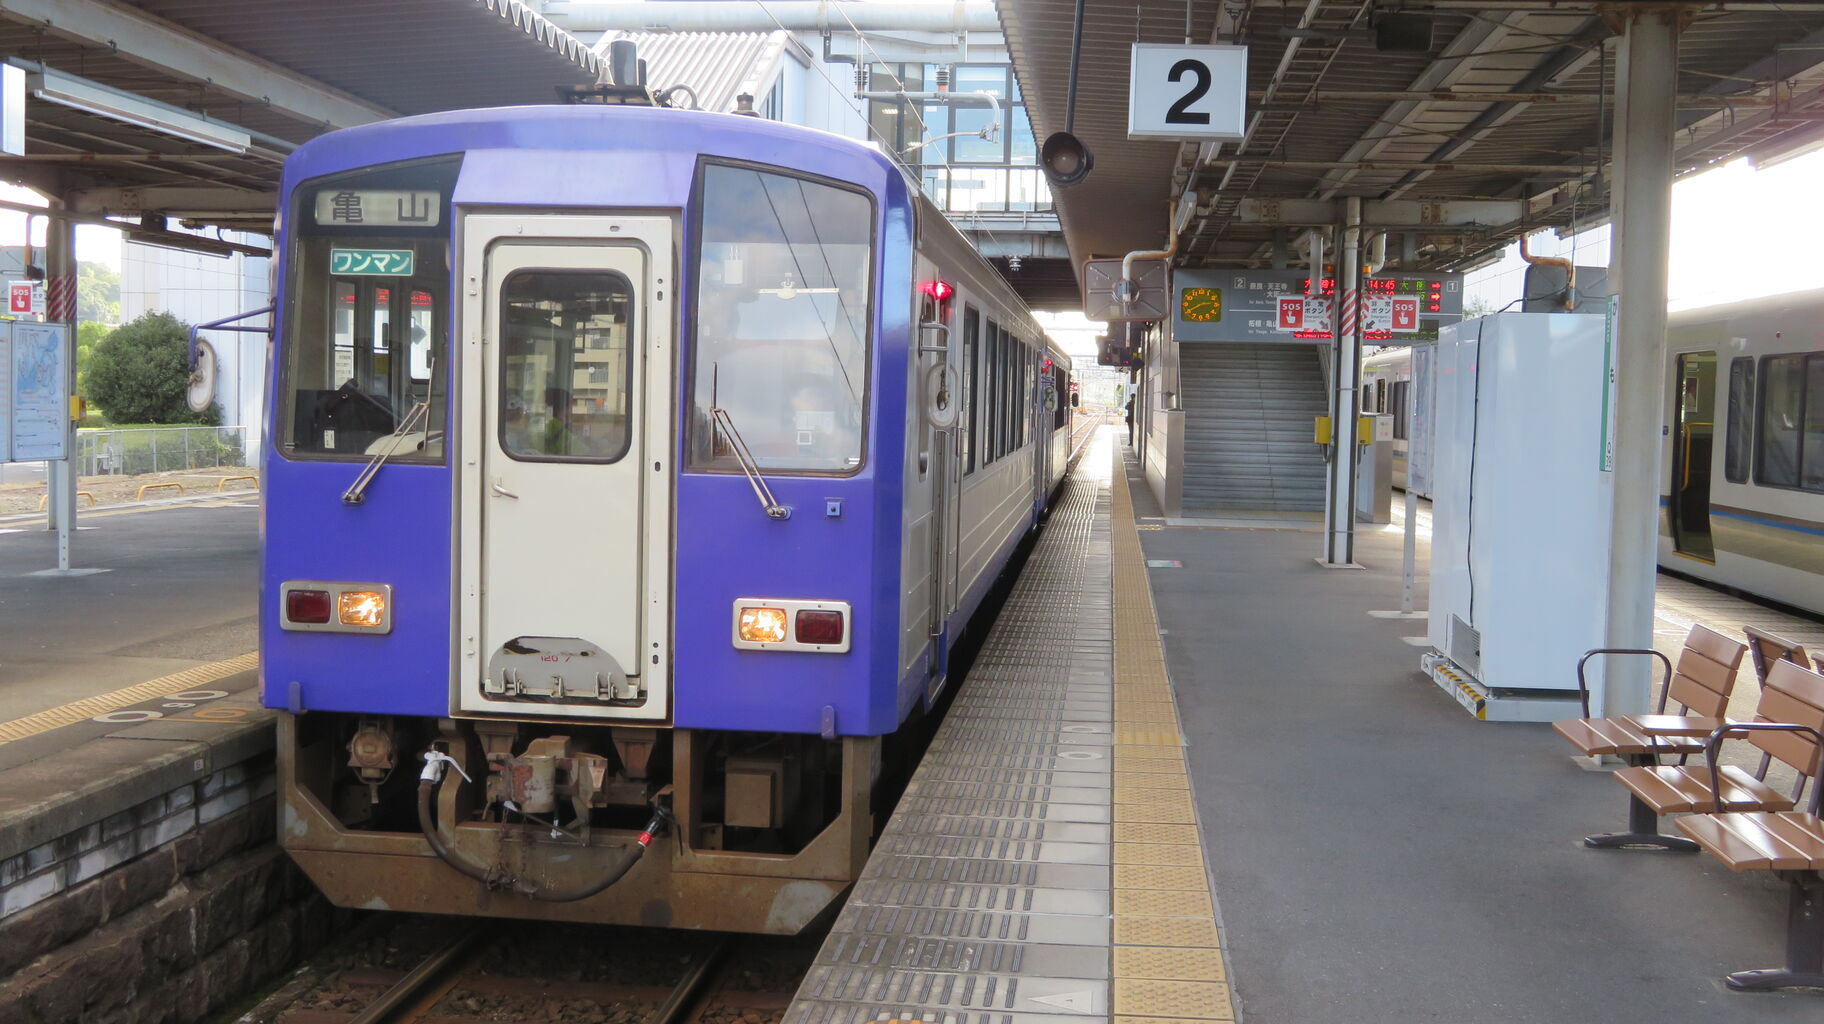 関西線 加茂 亀山駅間の列車に 車載型ic改札機 が設置される 19年11月 関西のjrへようこそ